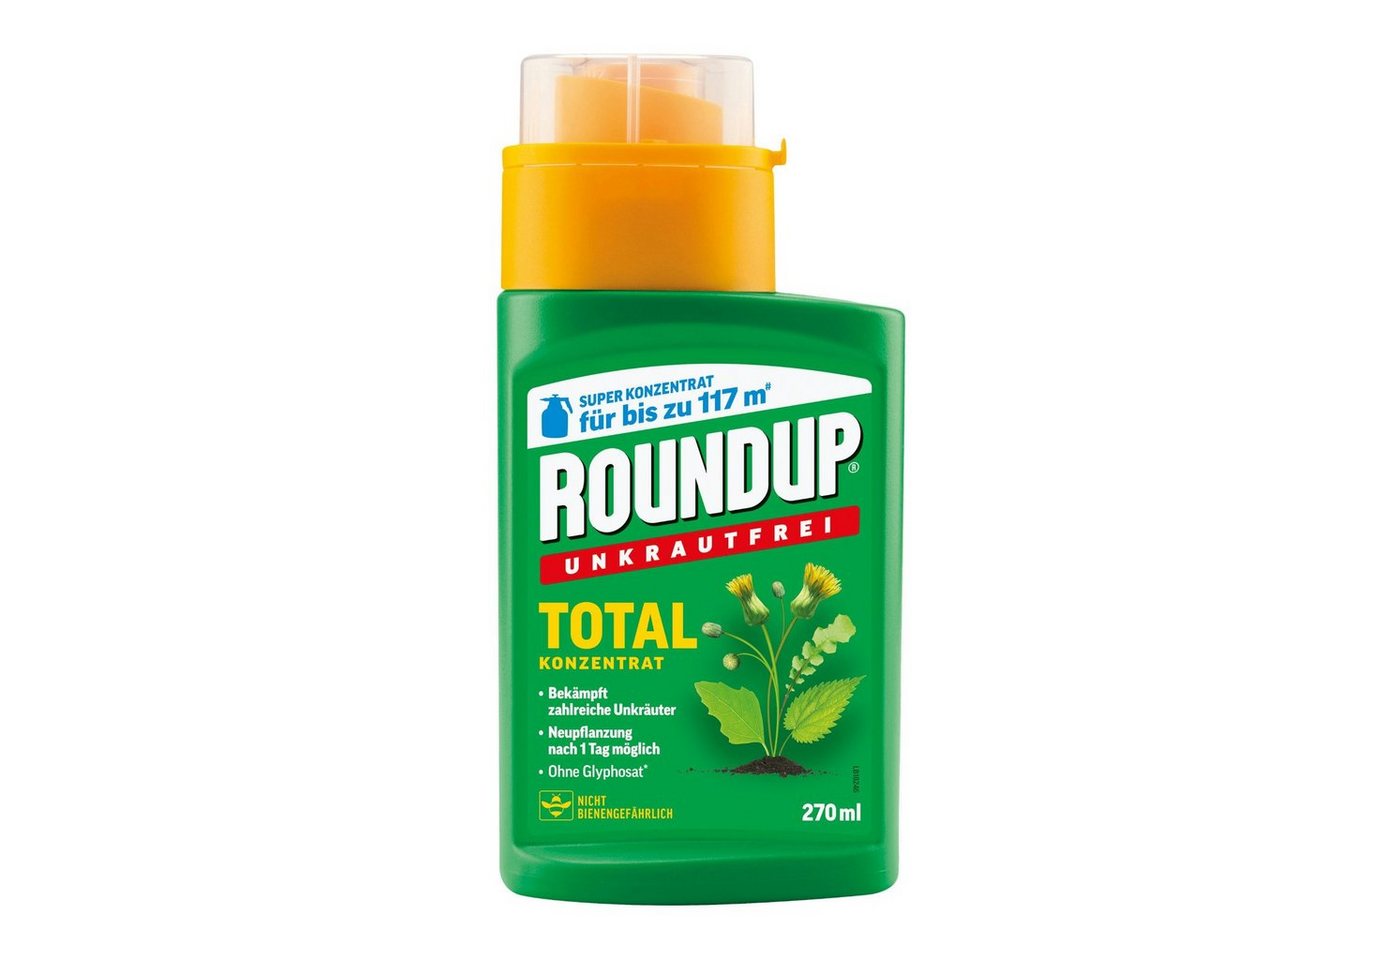 ROUNDUP Unkrautbekämpfungsmittel Unkrautfrei Total Konzentrat - 270 ml von ROUNDUP